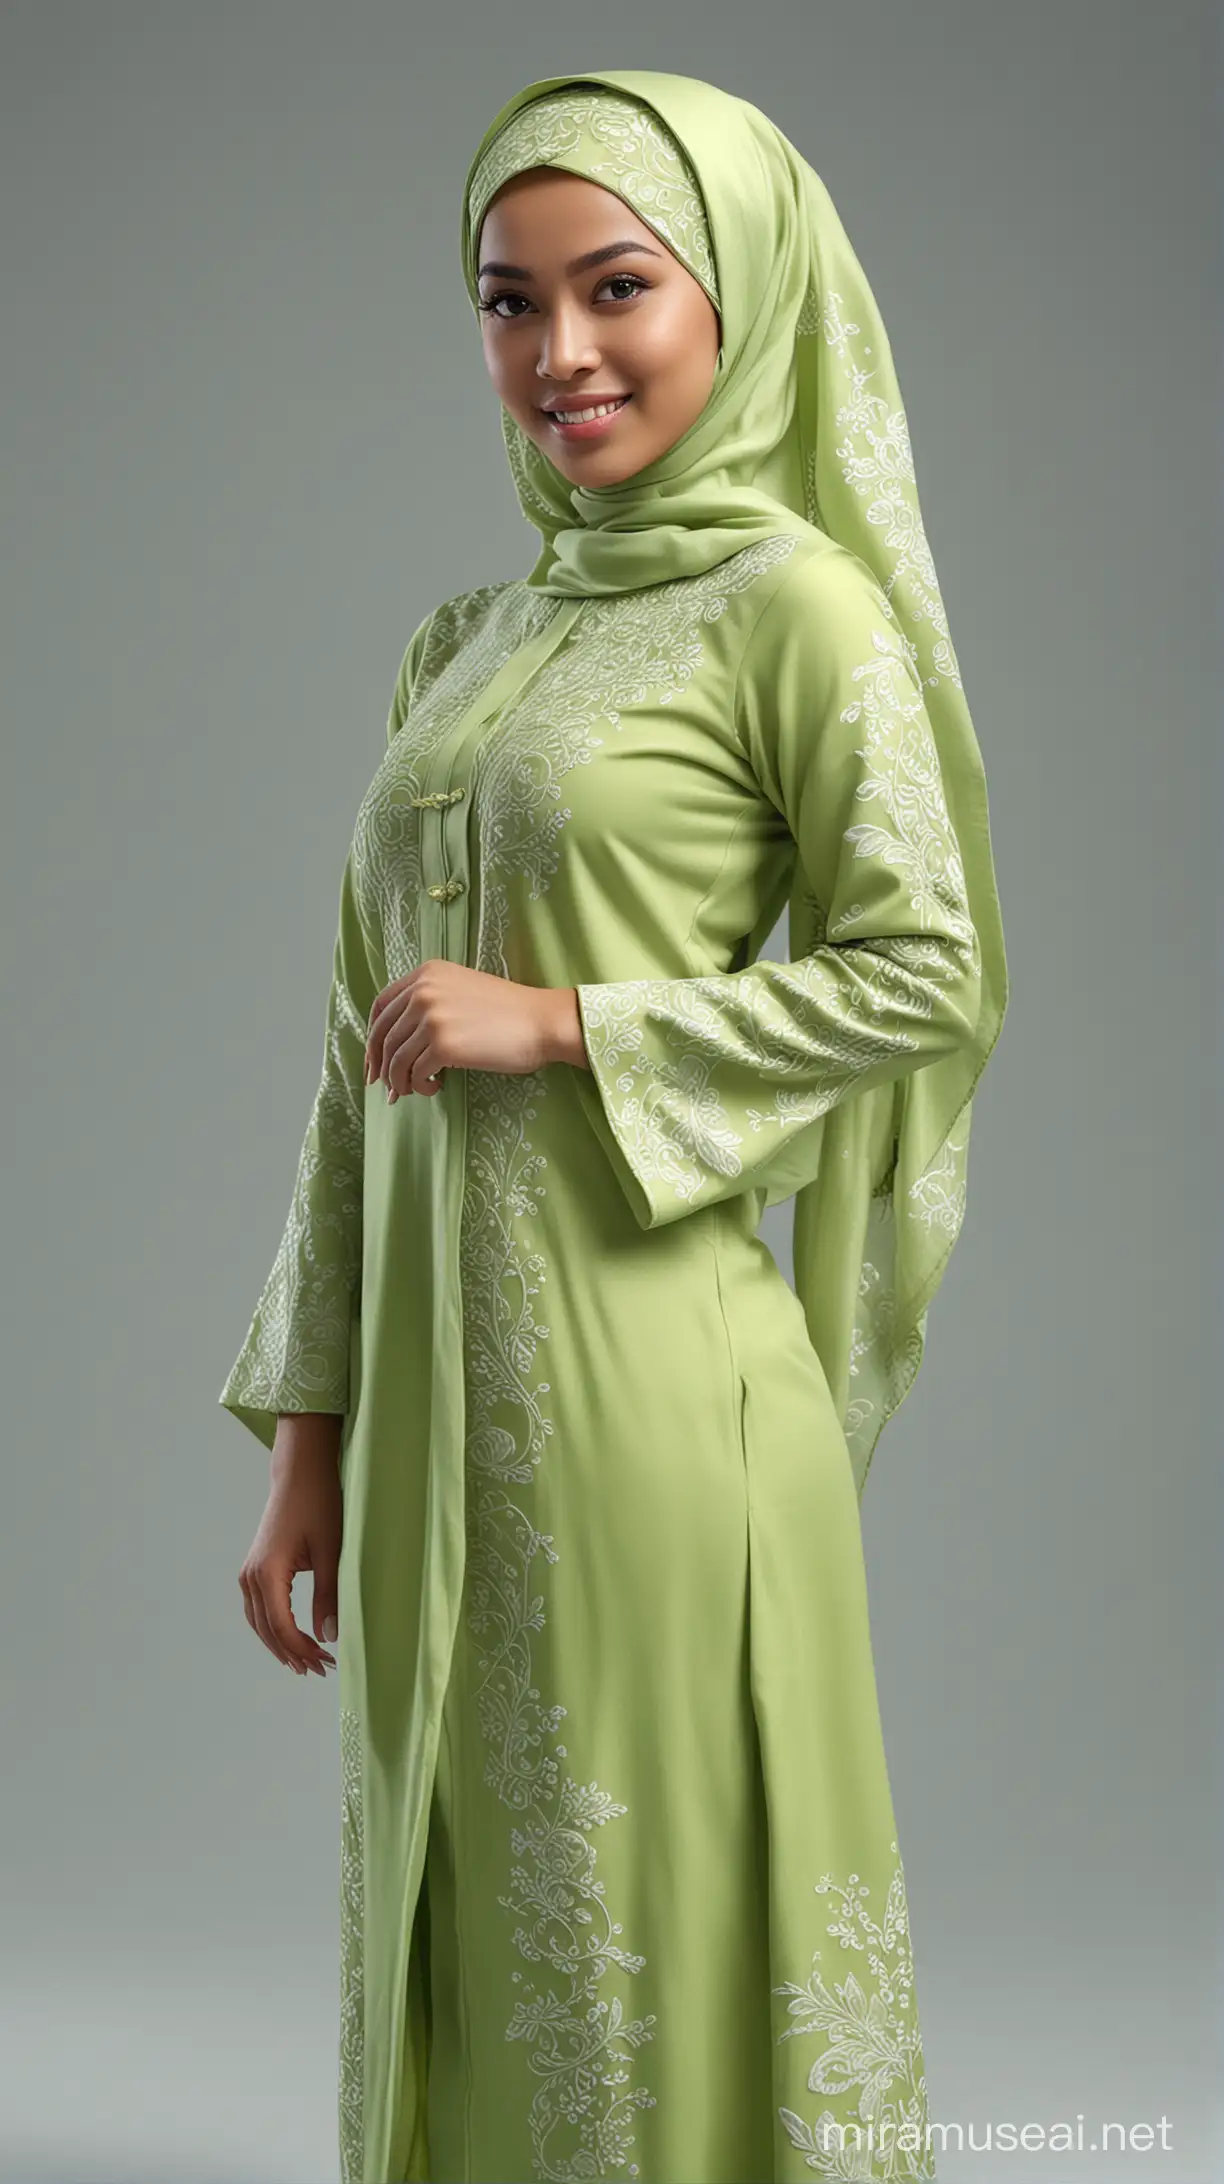 Elegant Malay Woman in Lime Green Baju Kurung with Intricate Design